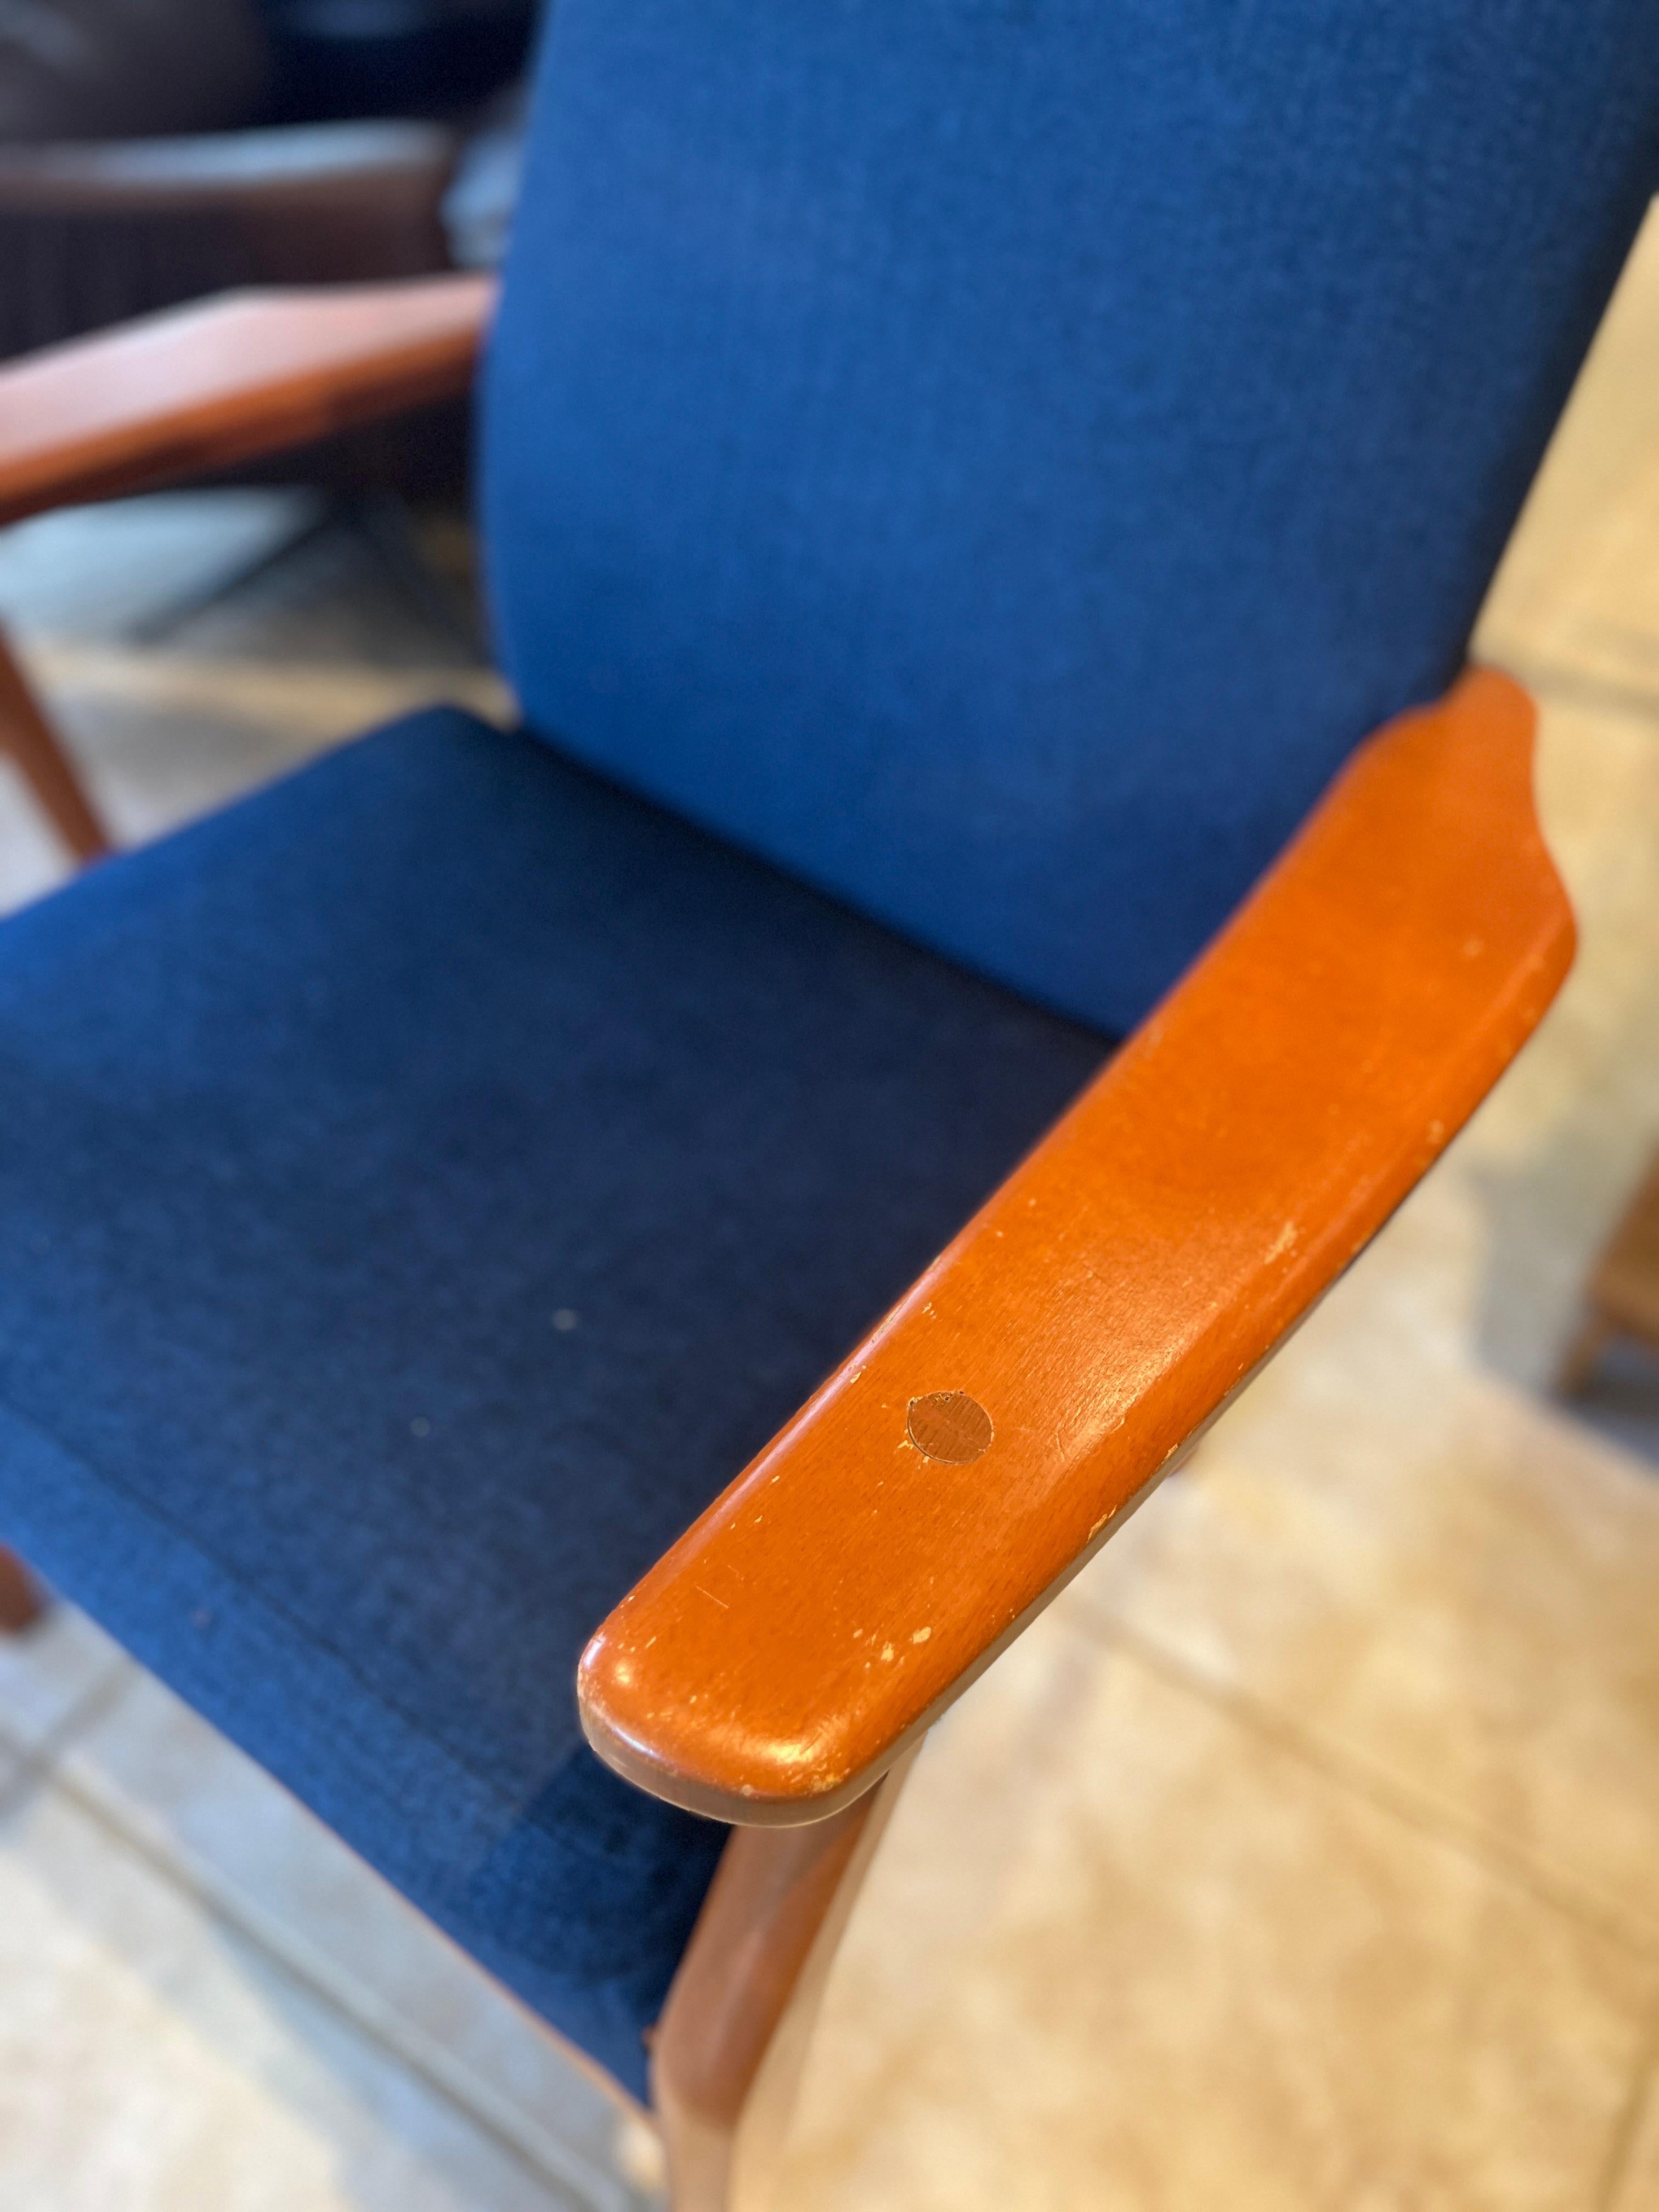 Chaises à dossier haut de style moderne du milieu du siècle de Parker Knoll, datant de 1981. Il est doté d'une structure en bois dur vintage et d'un siège ergonomique à haut dossier sculpté. La simplicité moderne rencontre le style intemporel.